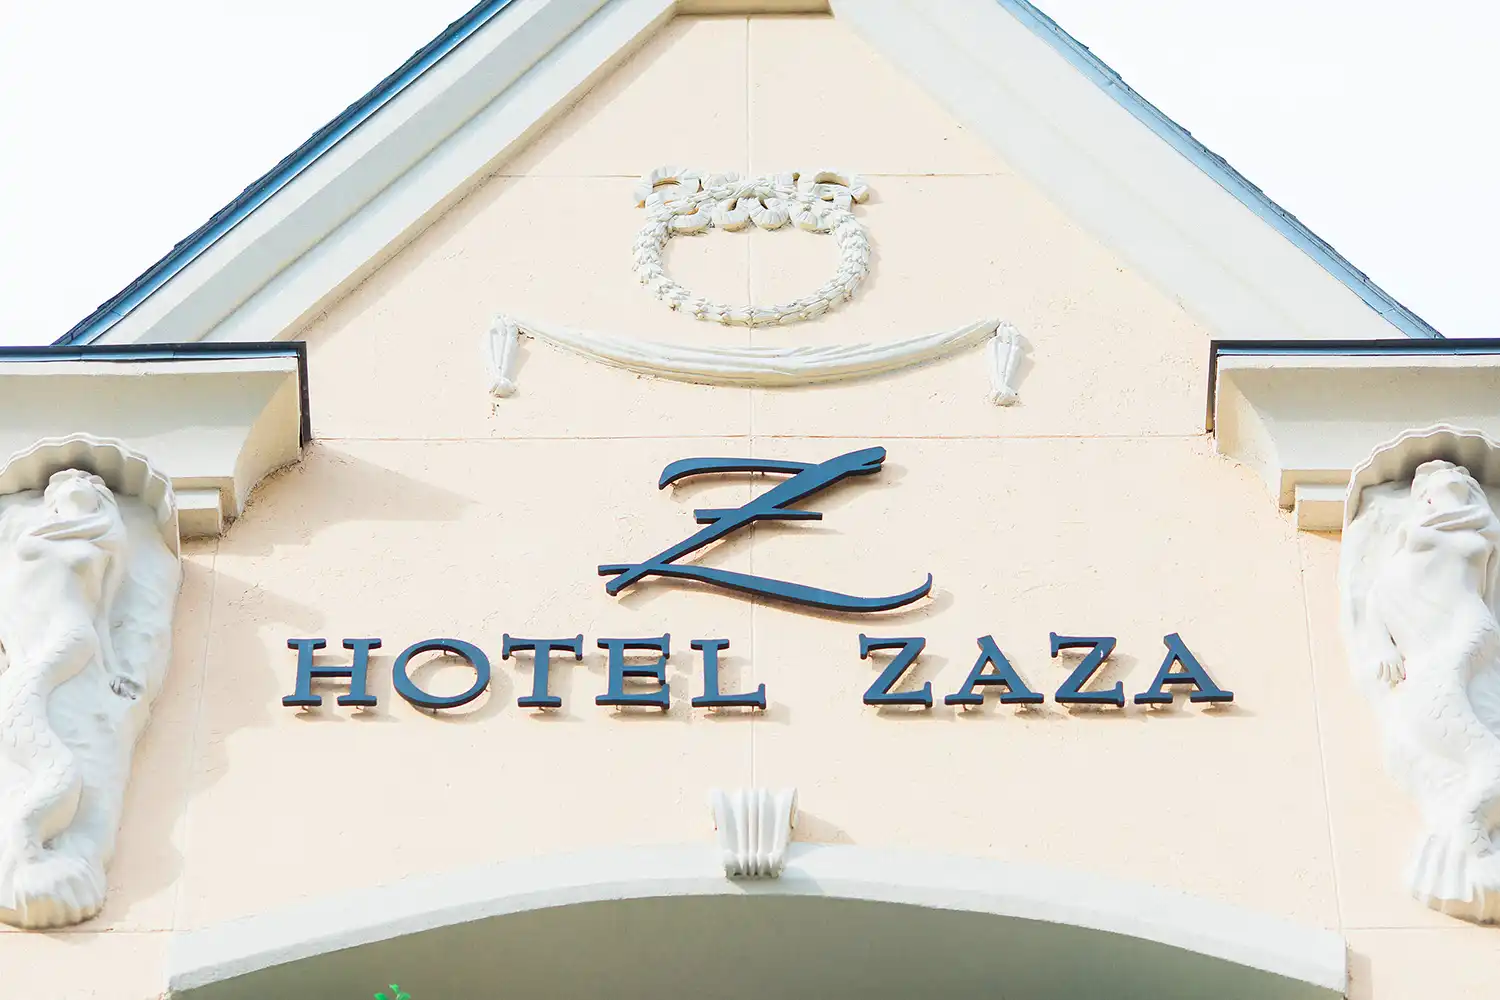 Hotel ZaZa Dallas Uptown Sign